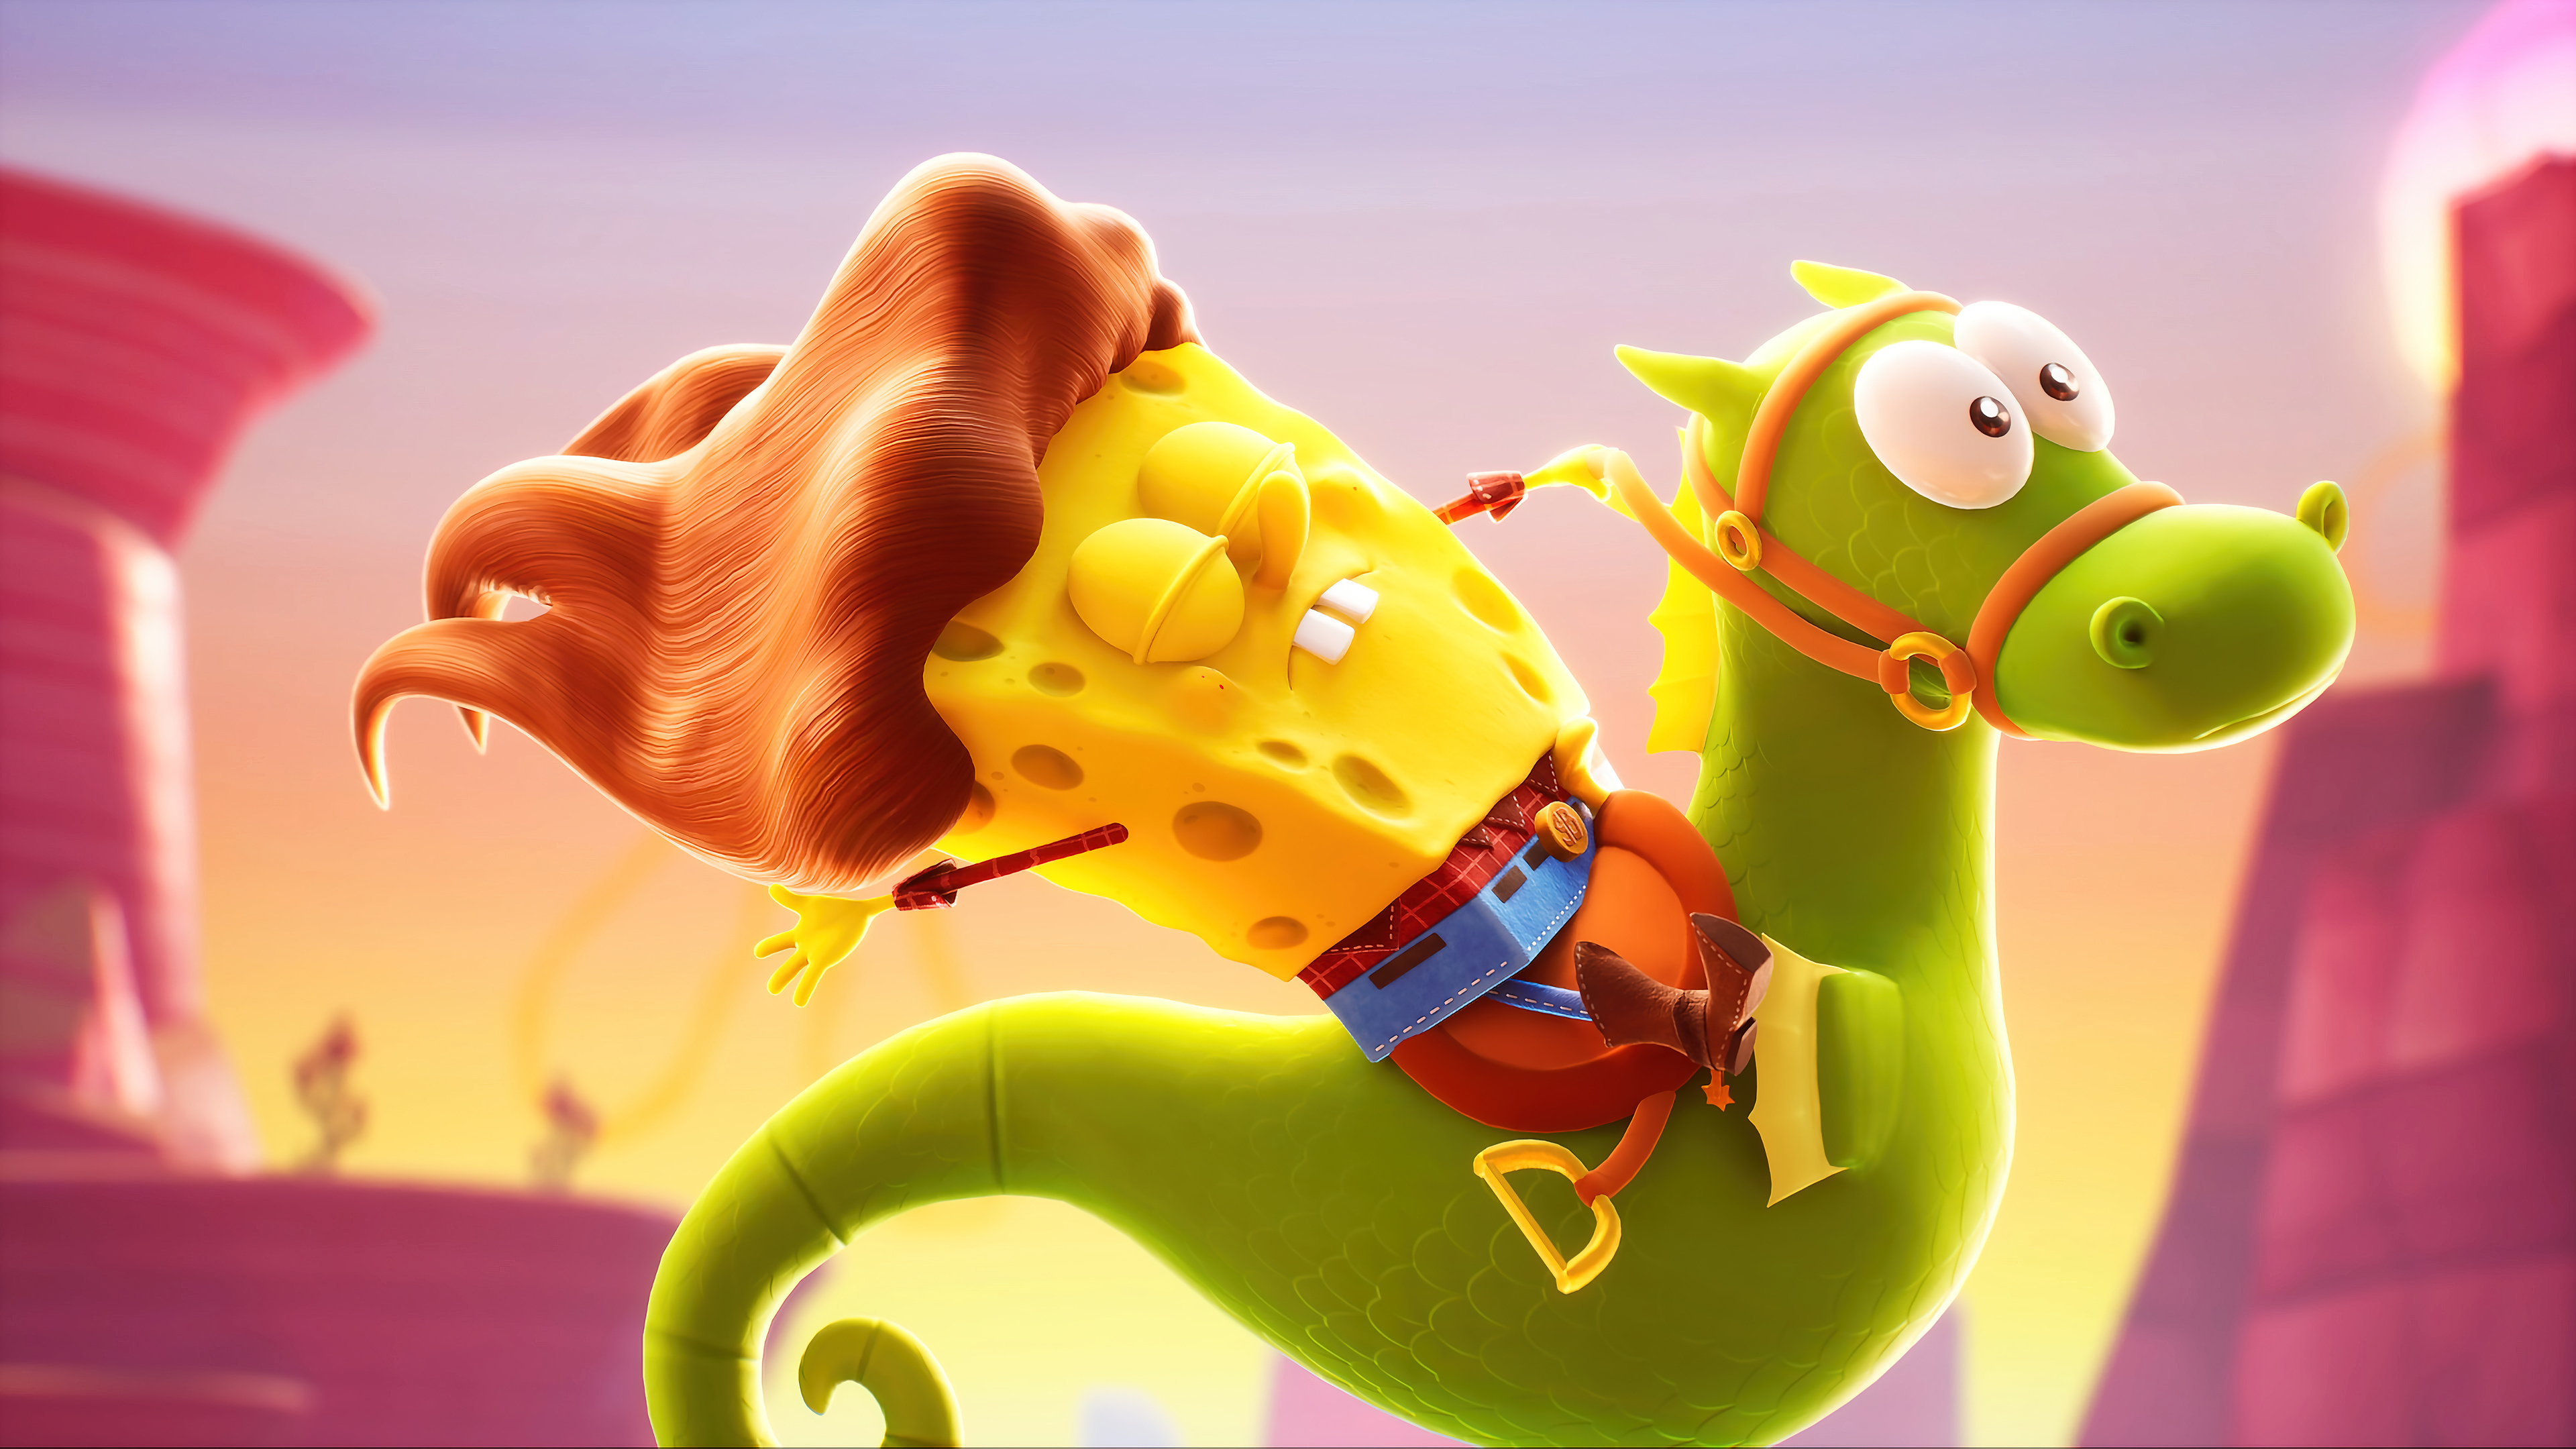 SpongeBob Schwammkopf, Cosmic adventure, 4K wallpaper, Free download, 3840x2160 4K Desktop